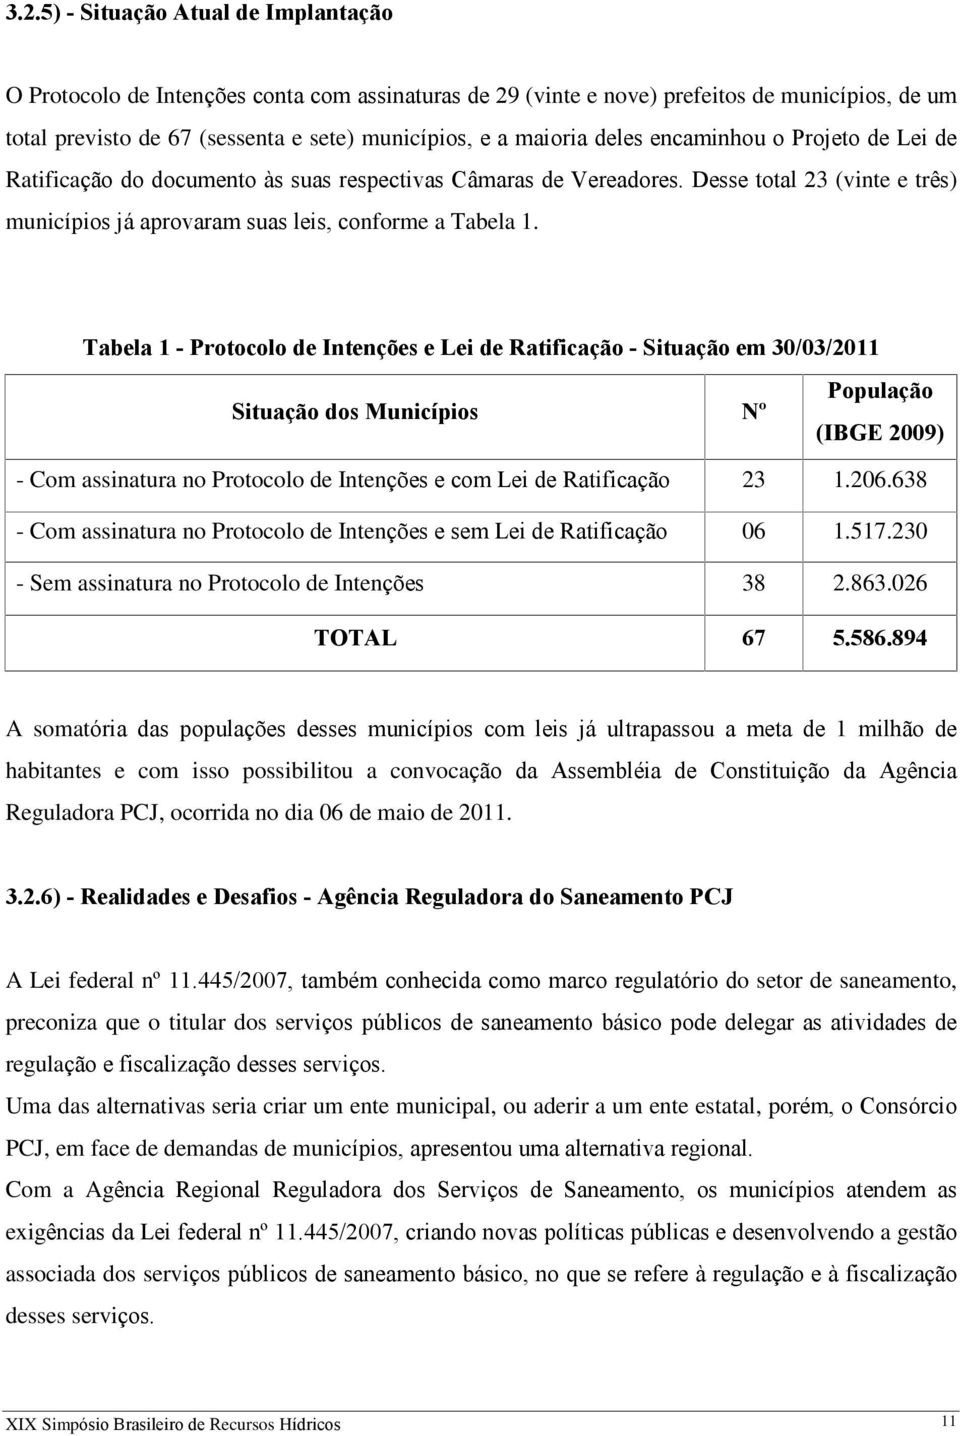 Tabela 1 - Protocolo de Intenções e Lei de Ratificação - Situação em 30/03/2011 Situação dos Municípios Nº População (IBGE 2009) - Com assinatura no Protocolo de Intenções e com Lei de Ratificação 23